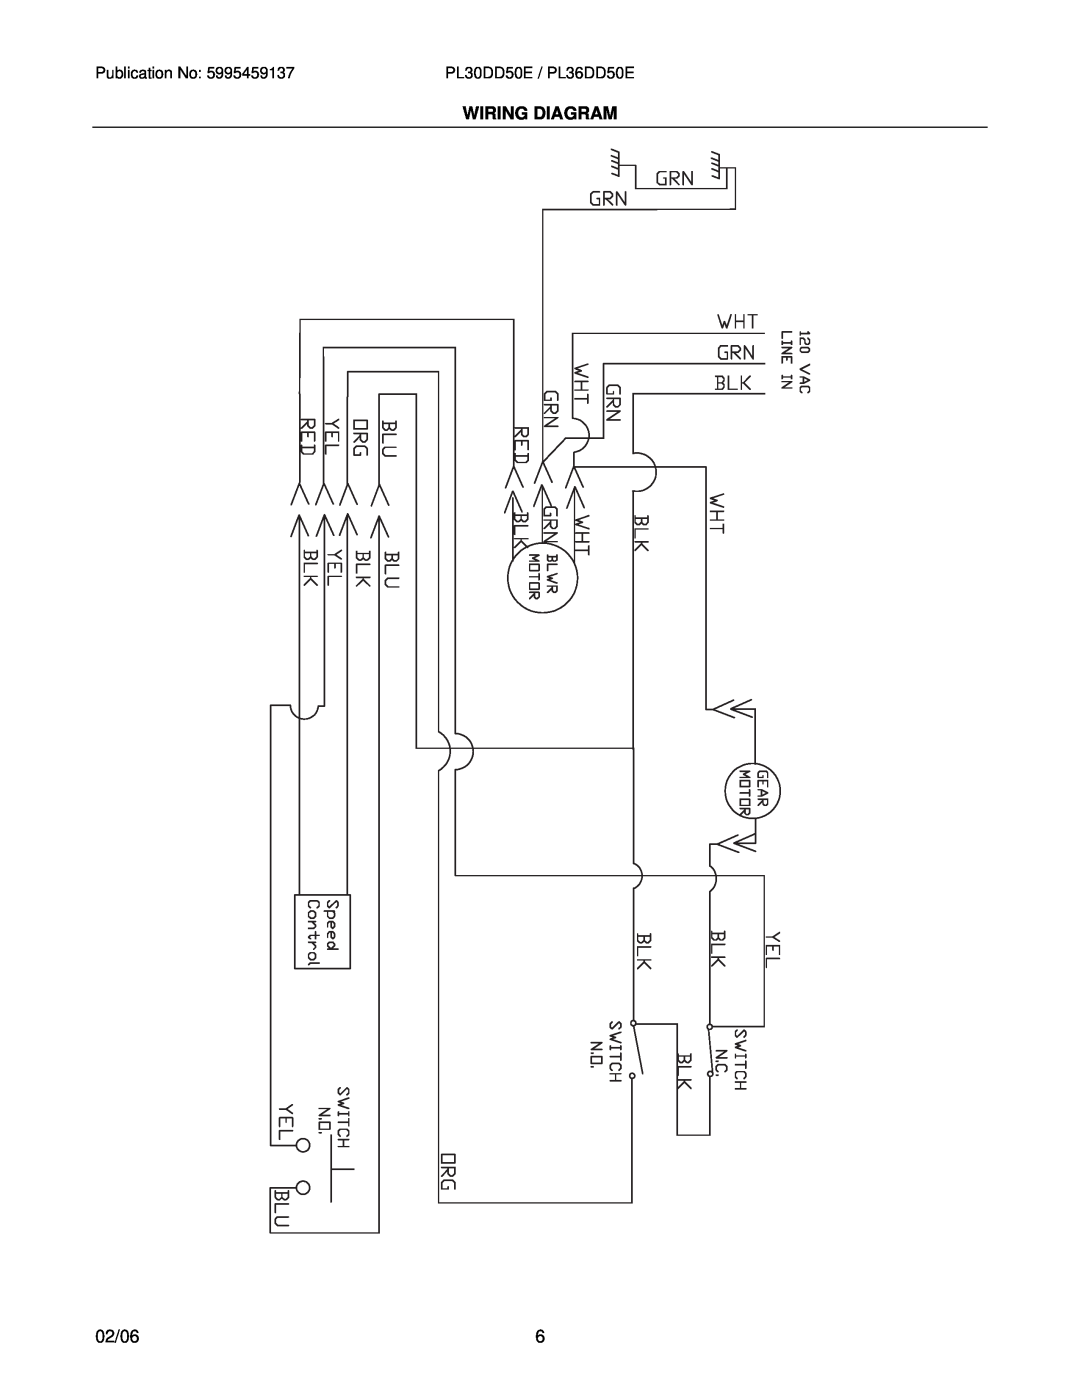 Electrolux PL36DD50EC, PL30DD50EC installation instructions Wiring Diagram, 02/06, PL30DD50E / PL36DD50E 